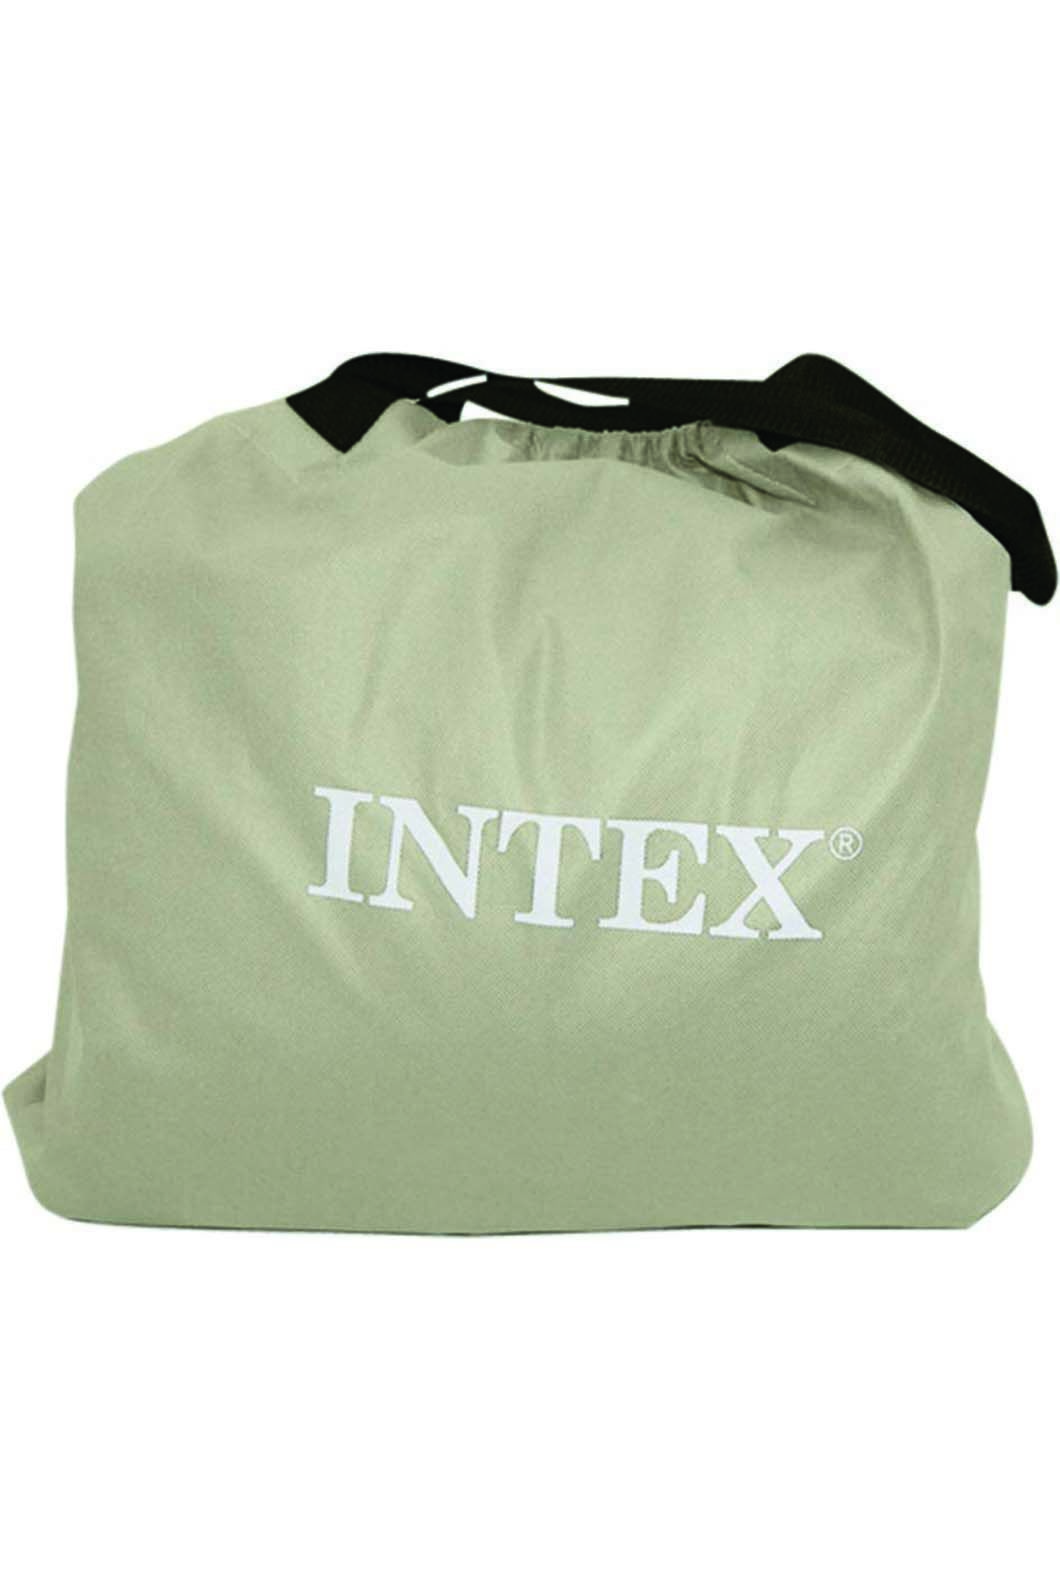 intex travel cot bed